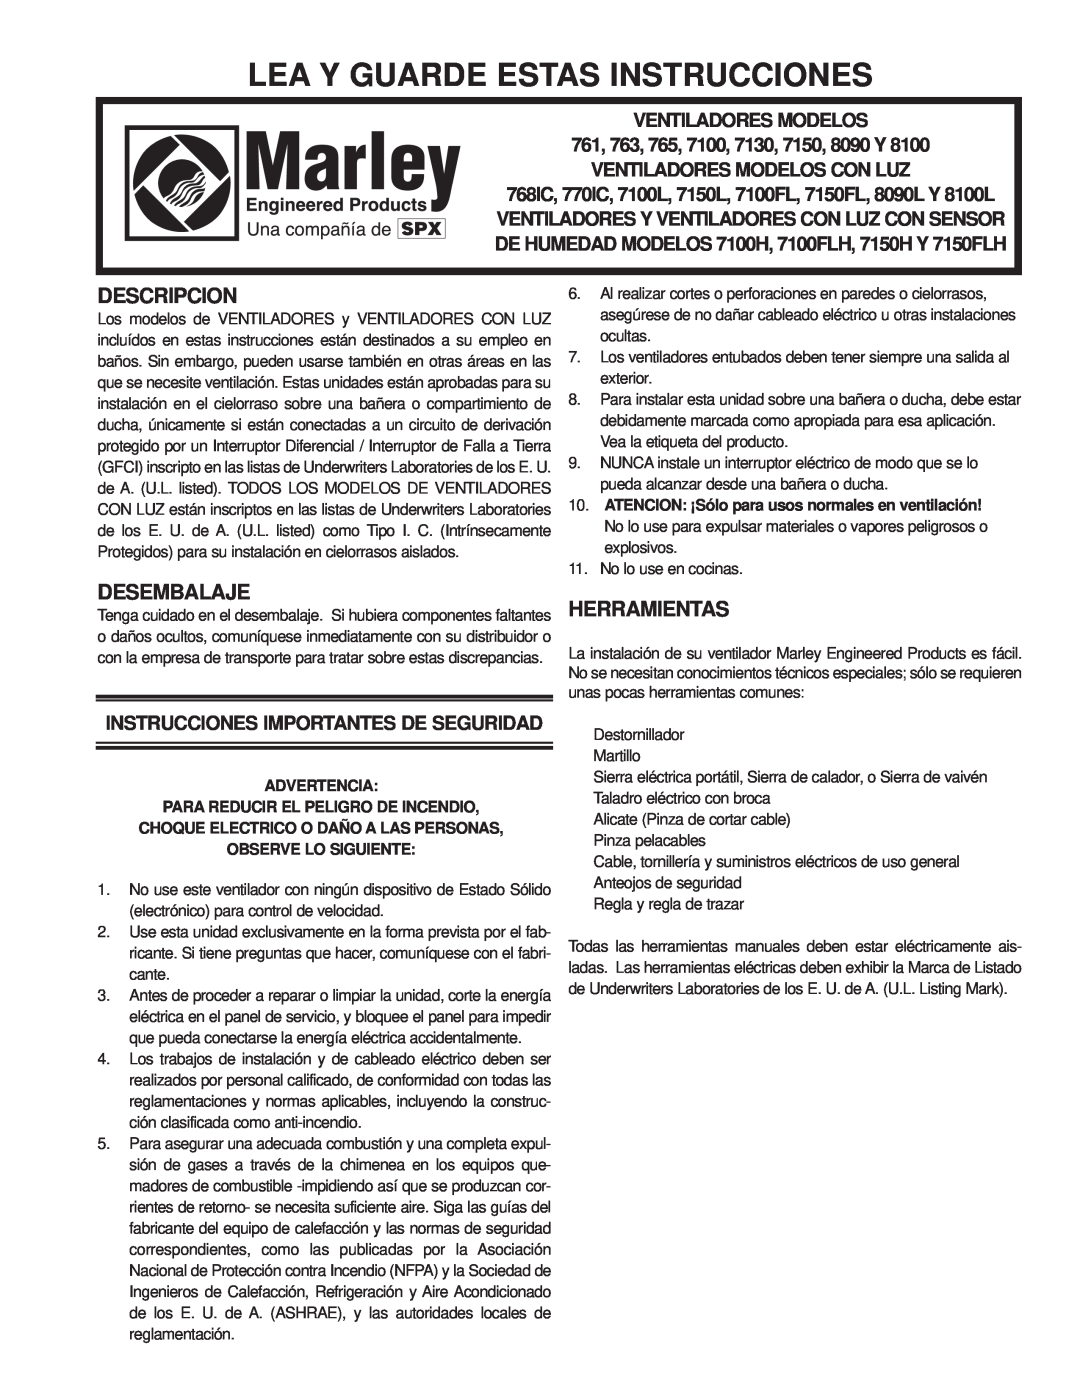 Marley Engineered Products 7150, 761 Lea Y Guarde Estas Instrucciones, Descripcion, Desembalaje, Herramientas, Advertencia 